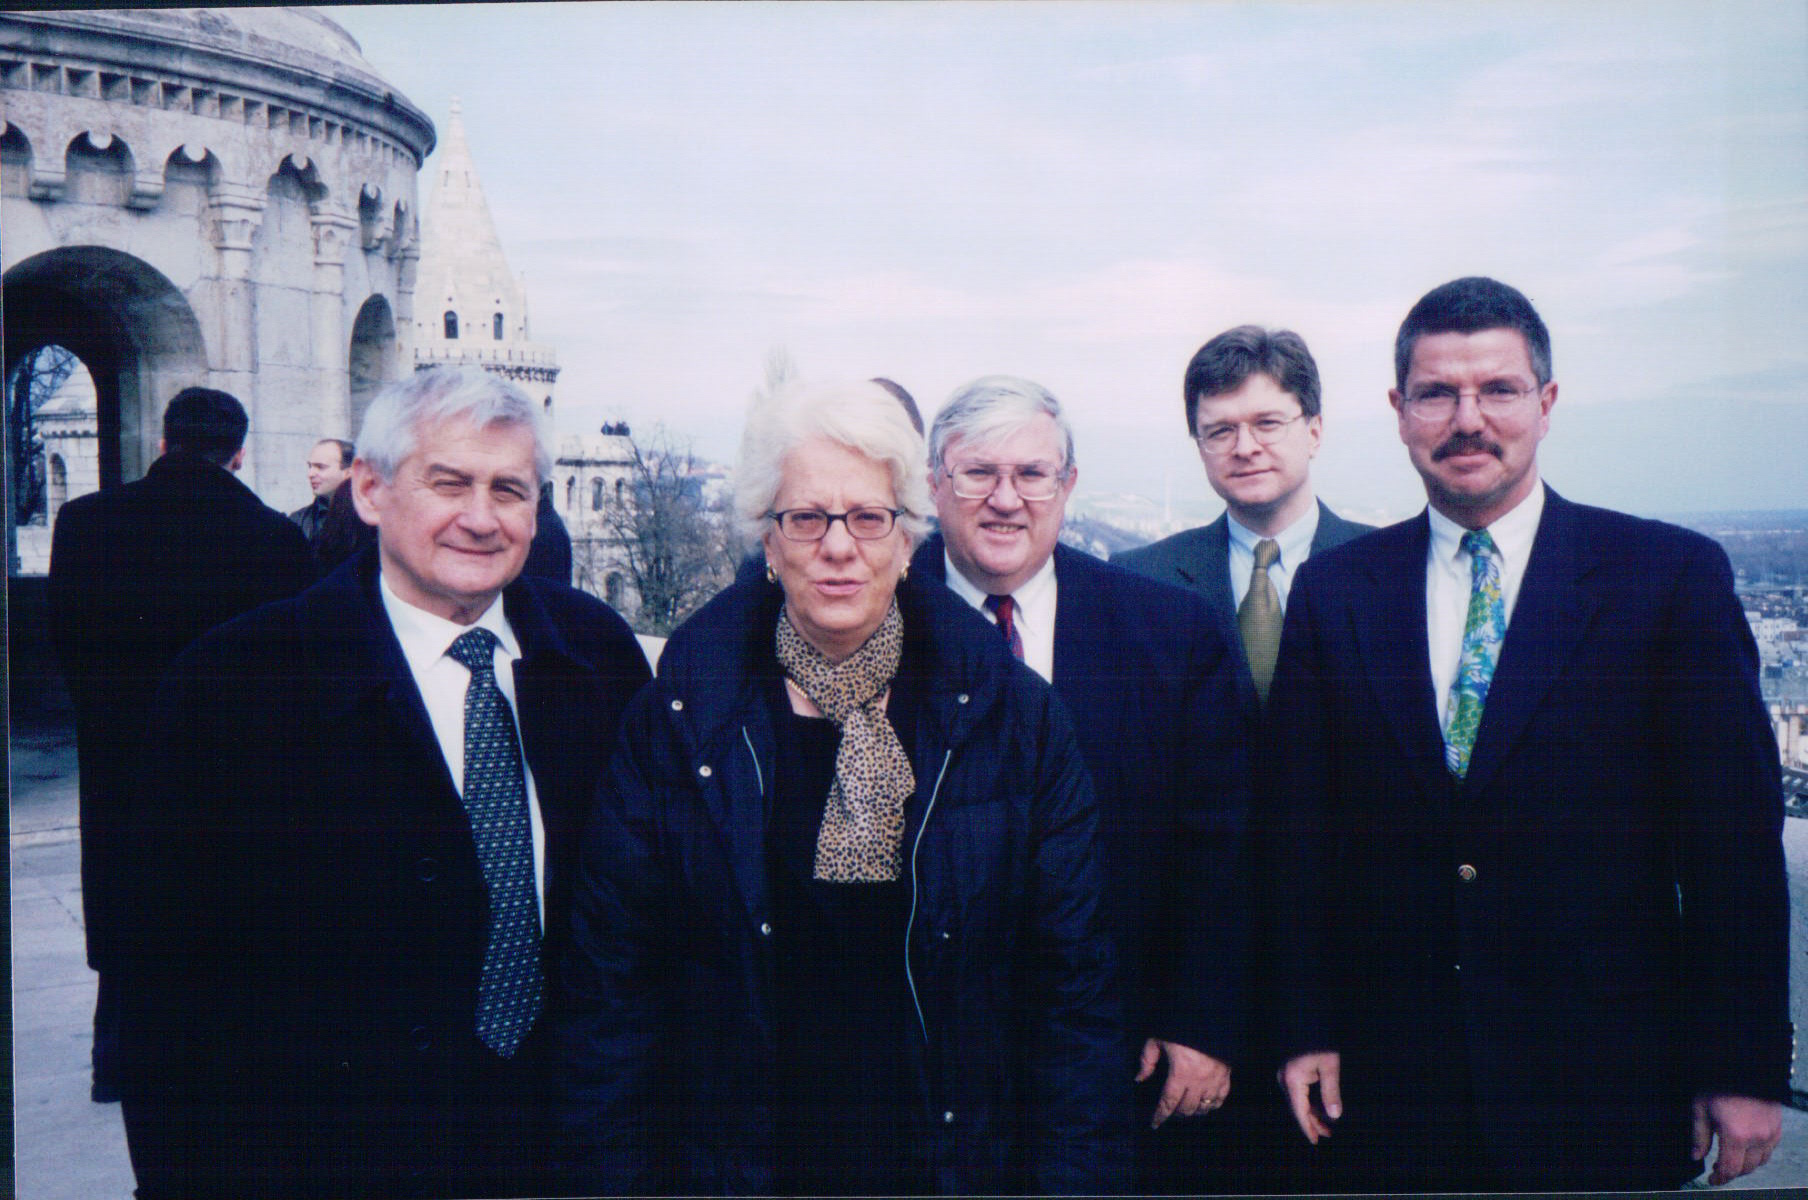 Misson to Budapest, February 2000, photo provided by Mr Graham Blewitt